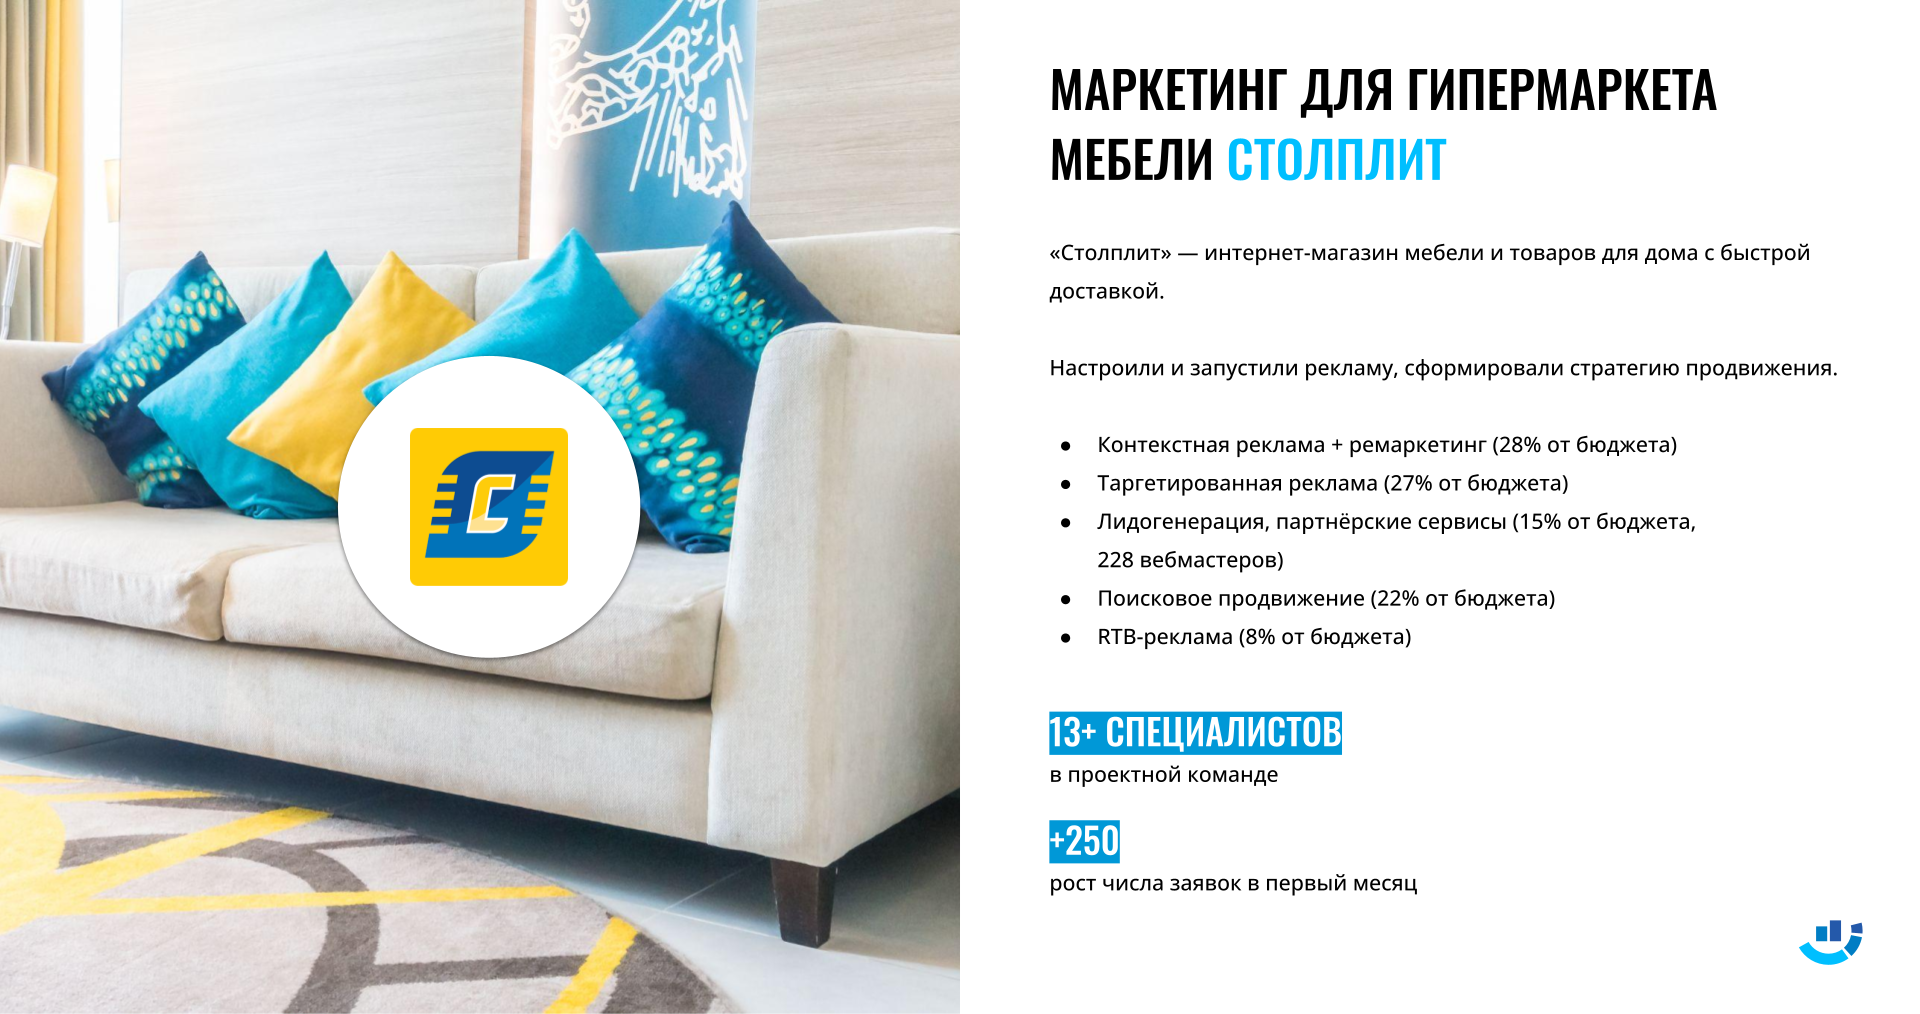 Кейс Интернет-реклама для ниши Мебель. Комплексный маркетинг для гипермаркета «Столплит»